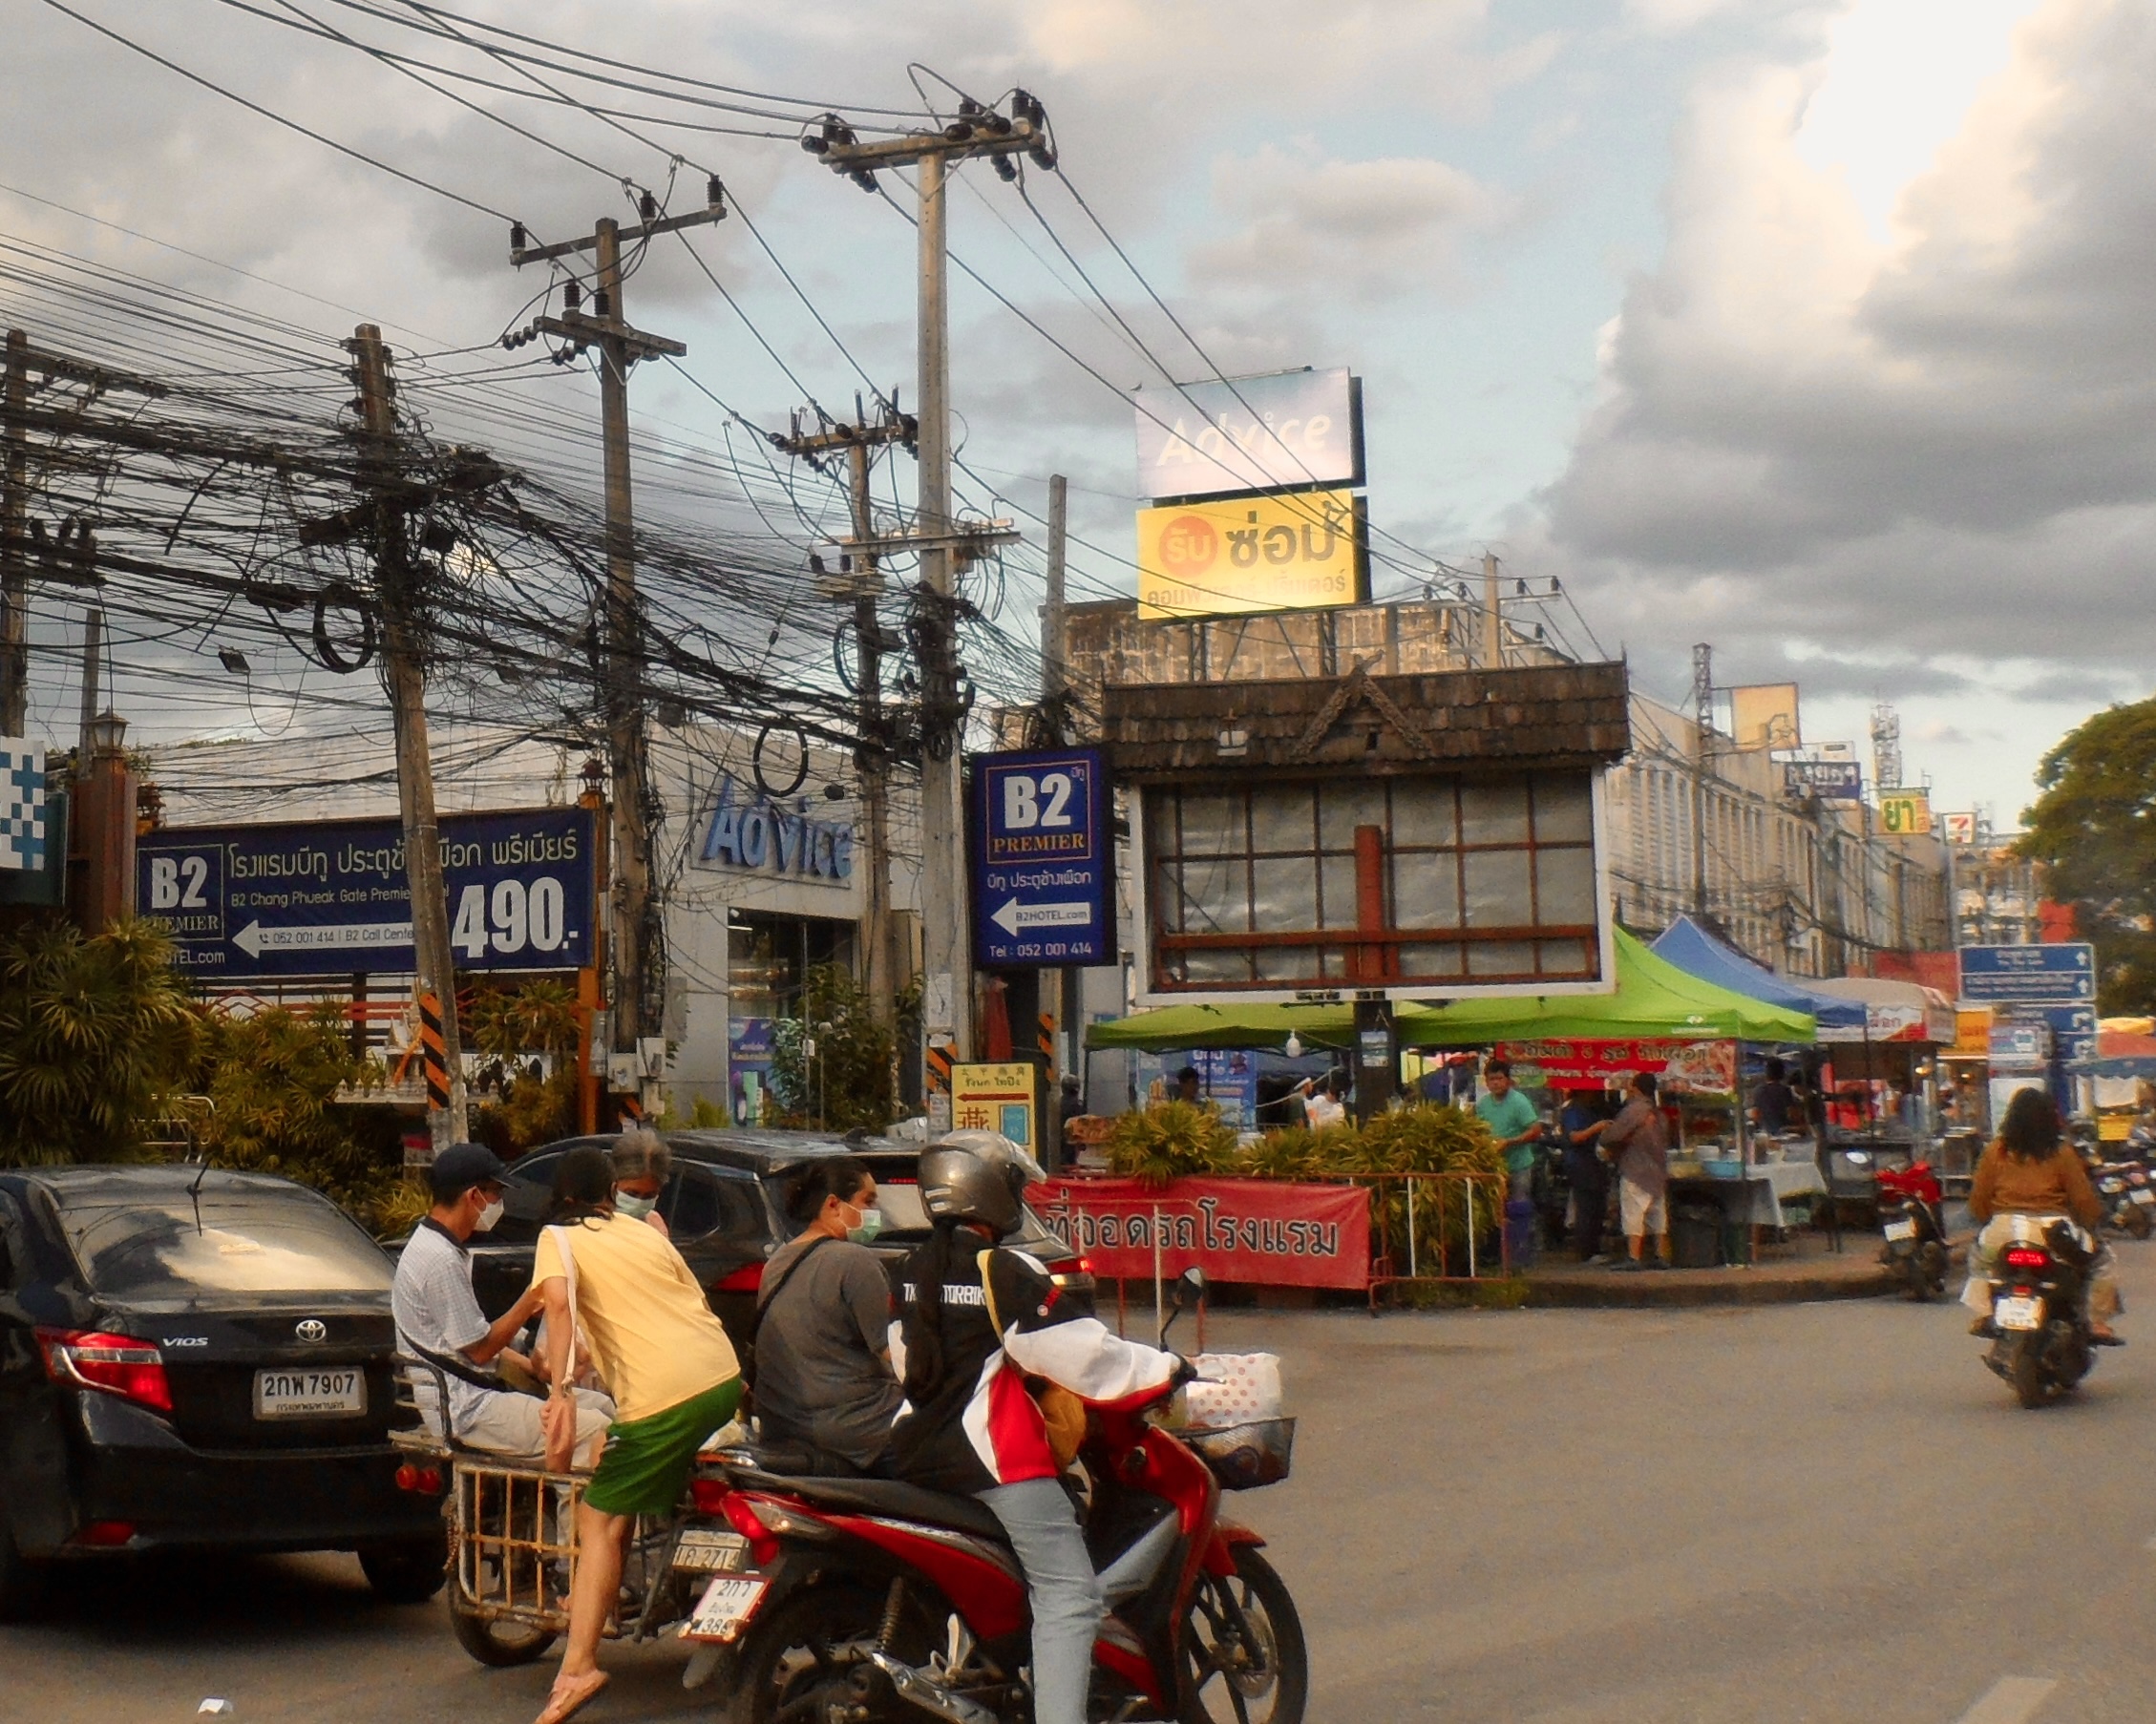 Thai street scene